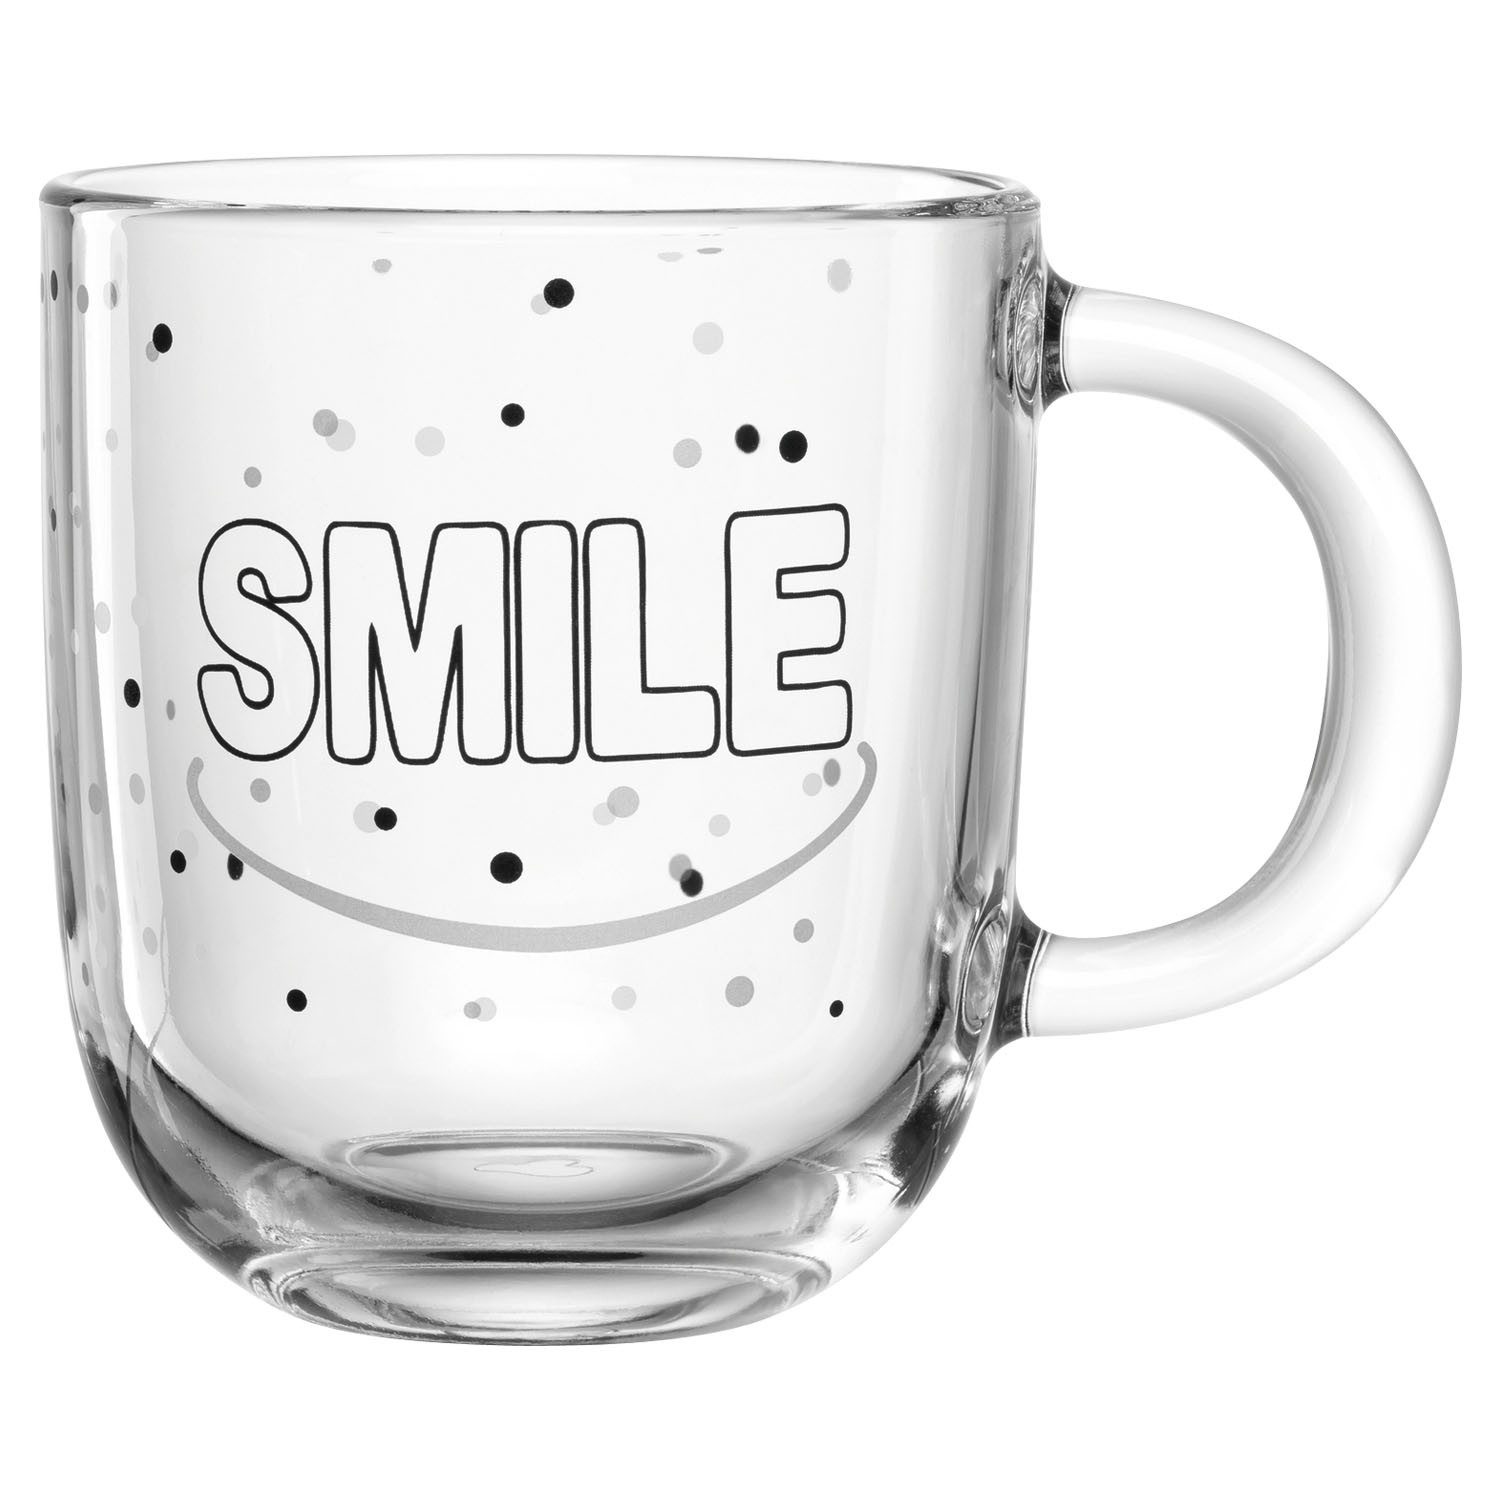 LEONARDO Tasse UFFICIO, 400 ml, Transparent, Schwarz, Glas, mit Schriftzug Smile, Spülmaschinengeeignet